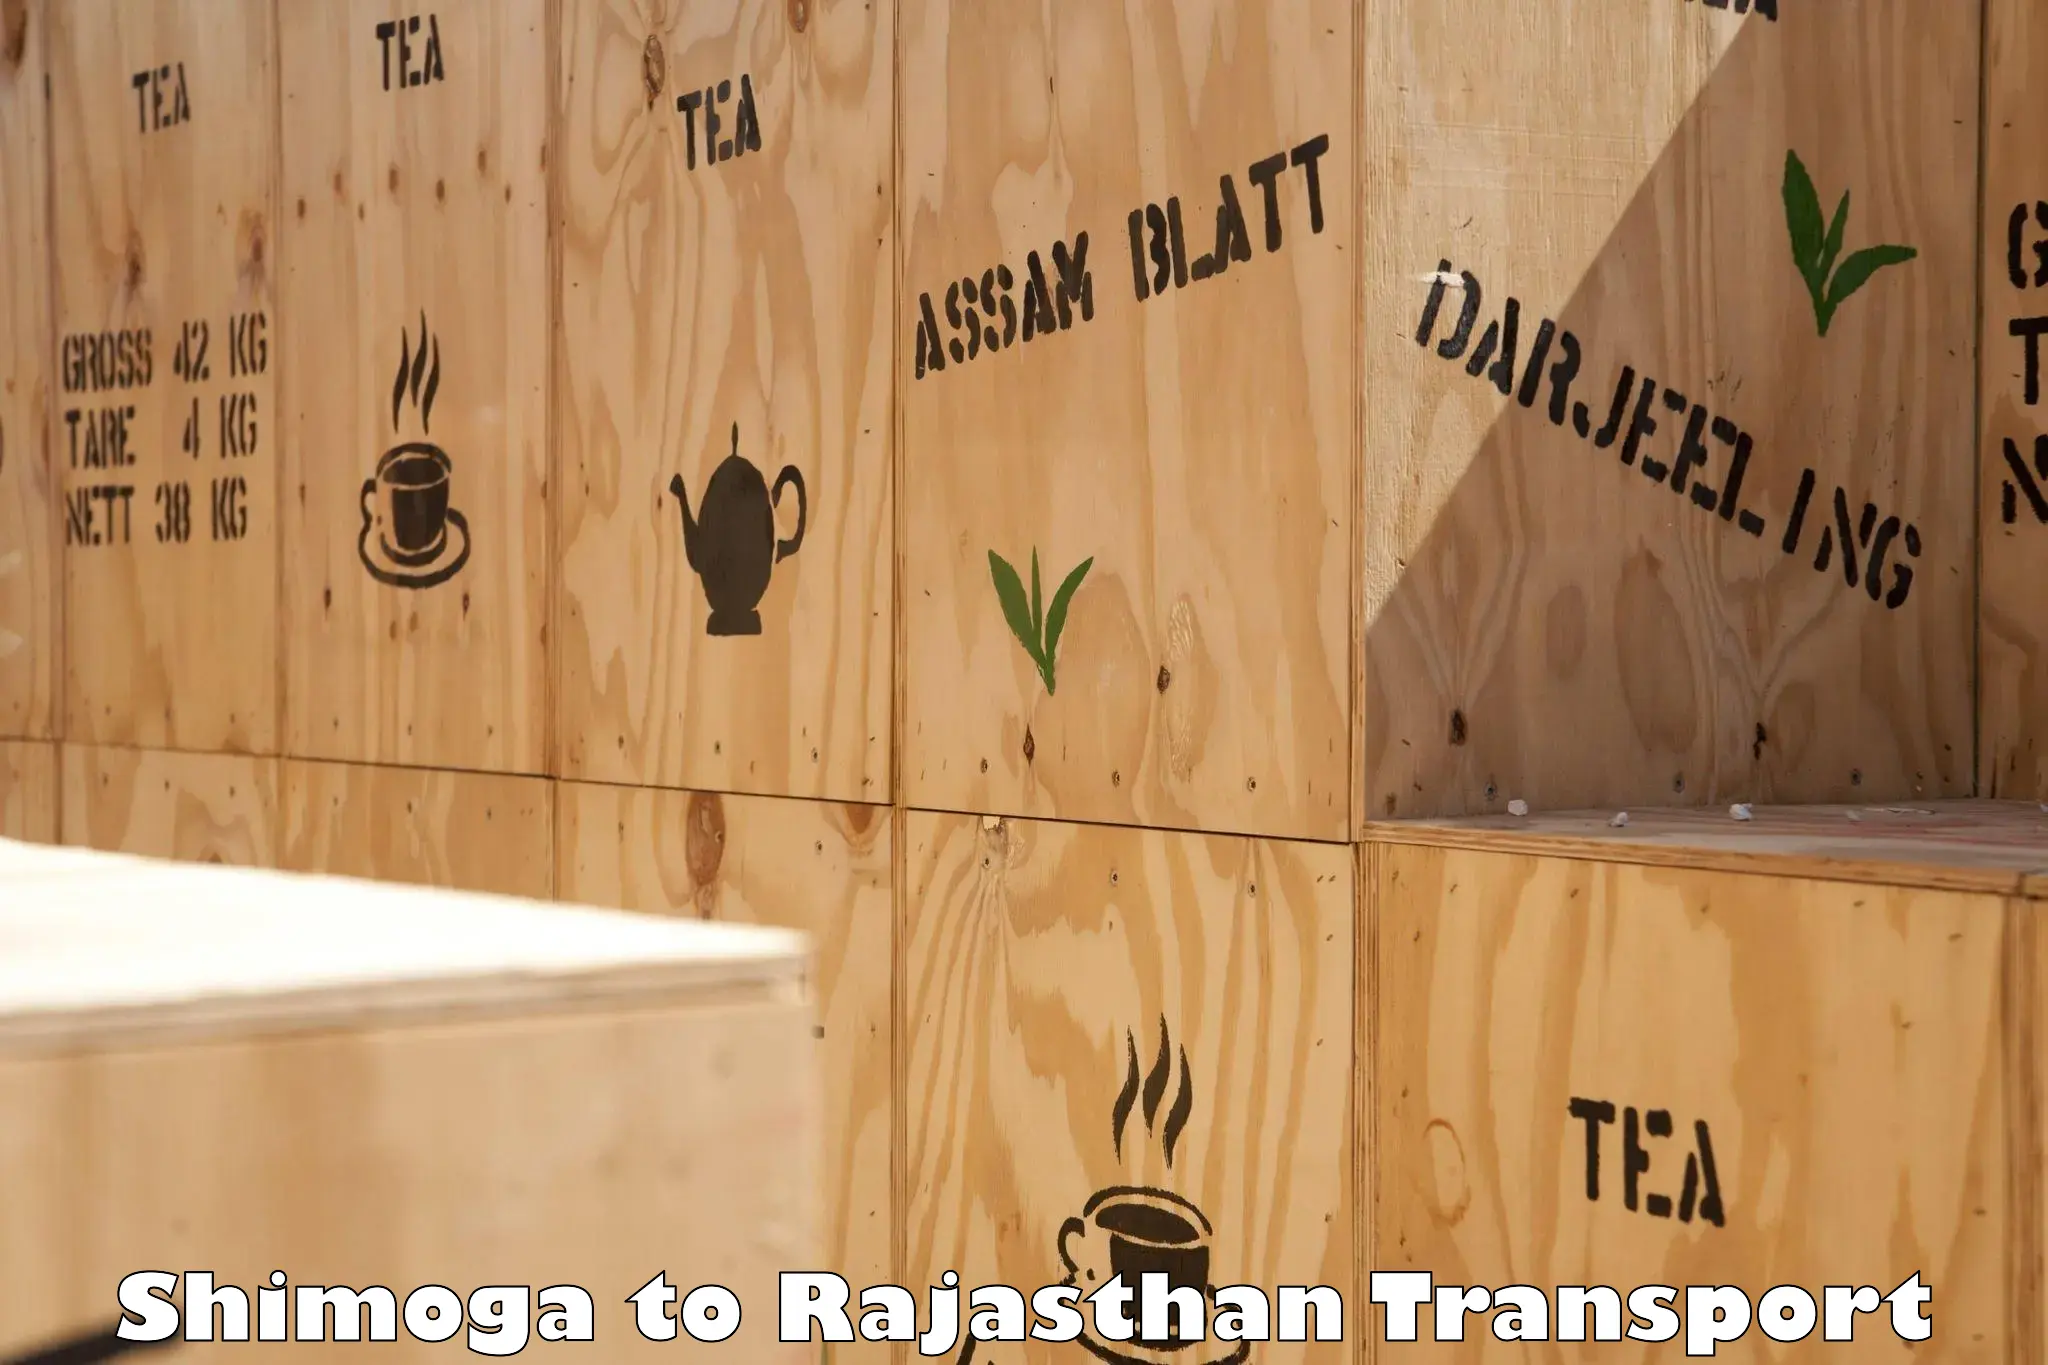 Container transport service Shimoga to Bijainagar